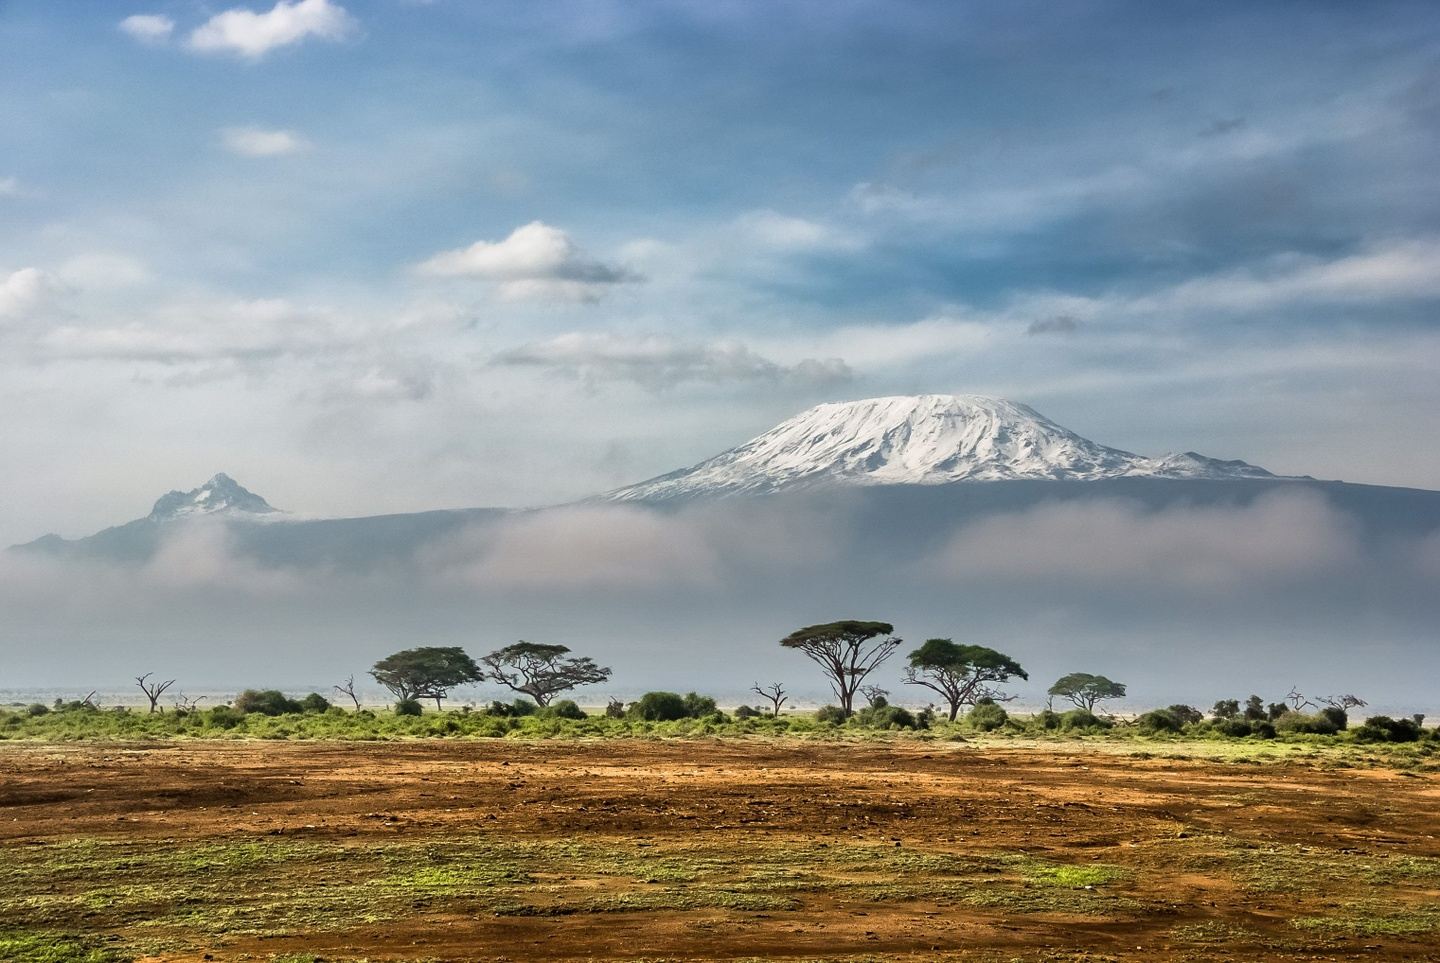 10 Days in Tanzania climbing the Kilimanjaro